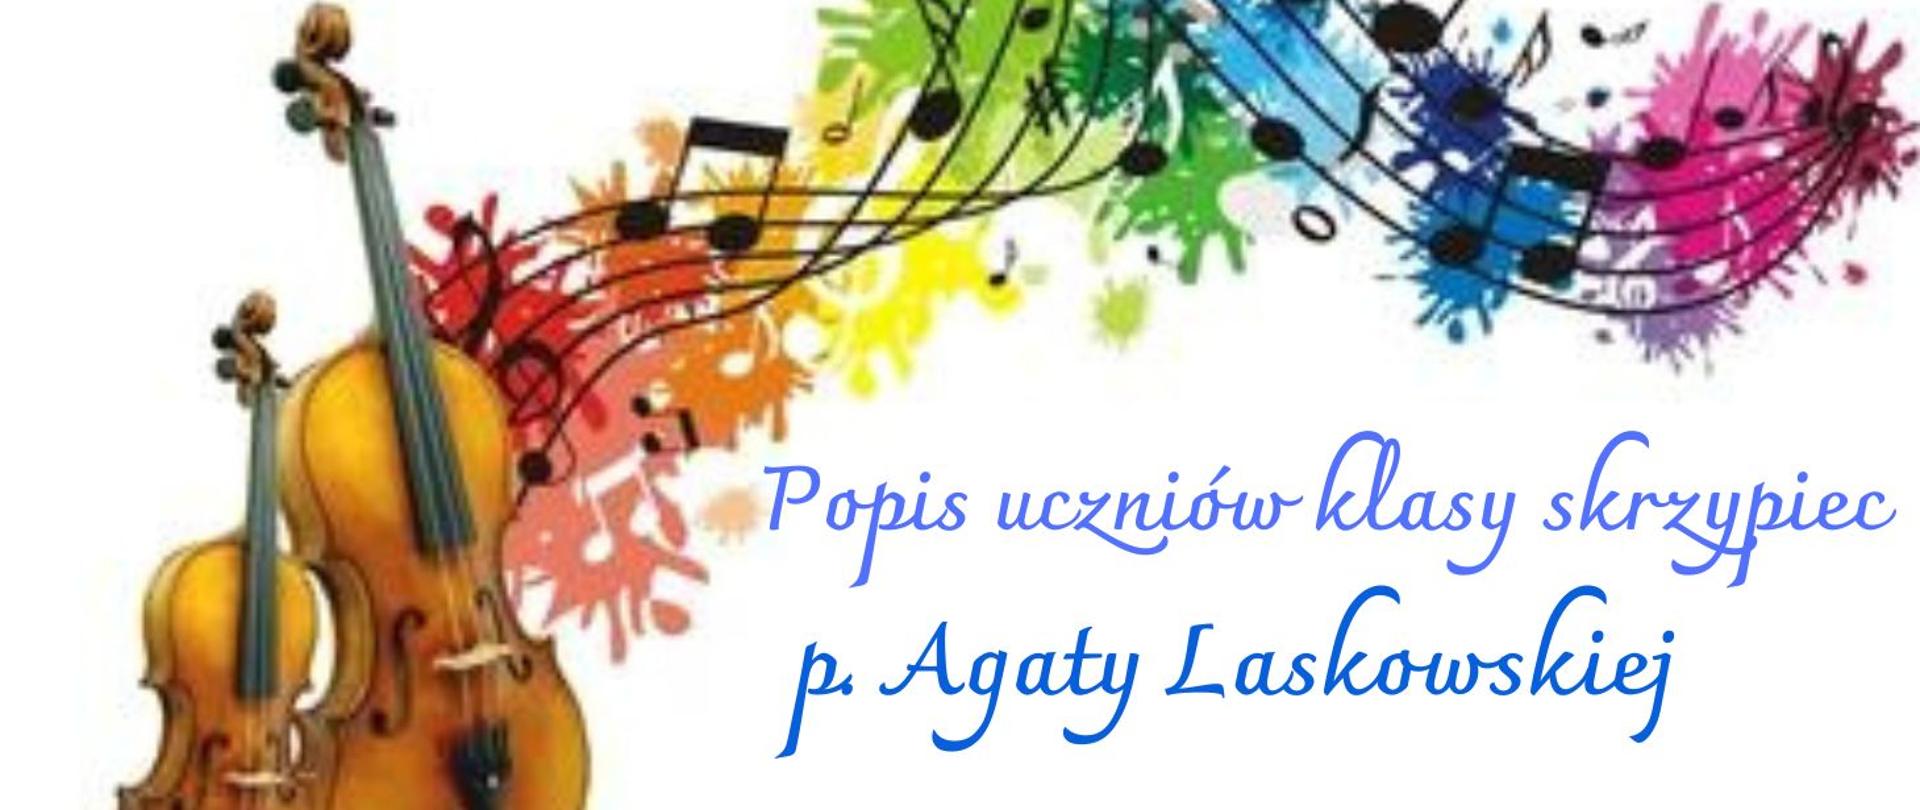 Kolorowa grafika skrzypiec oraz pięciolinii informująca o popisie uczniów klasy skrzypiec p. Agaty Laskowskiej.